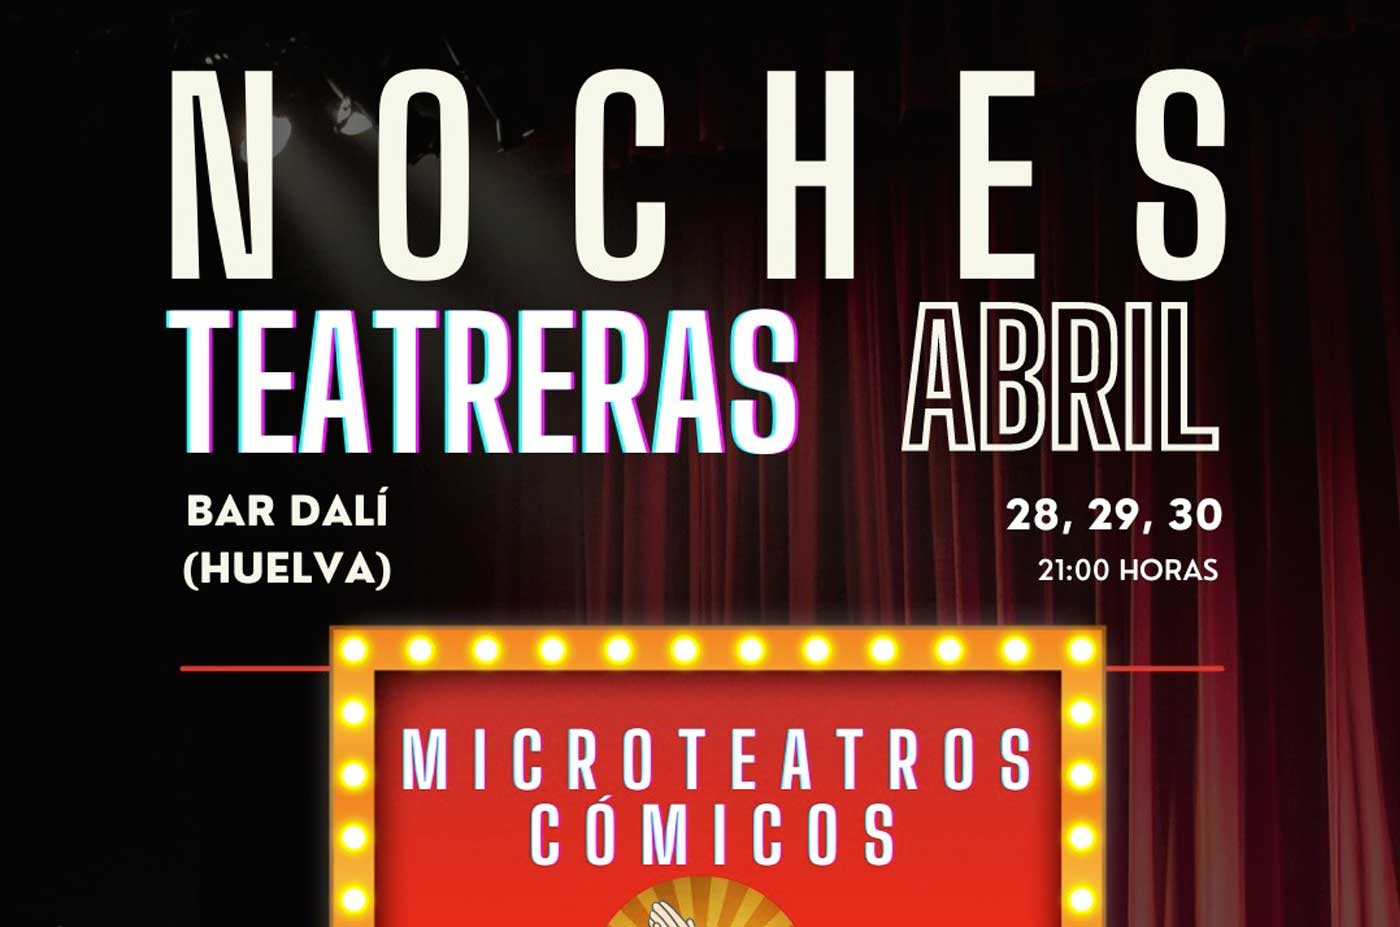 Noches teatreras en el Dali Huelva Abril 28 29 30